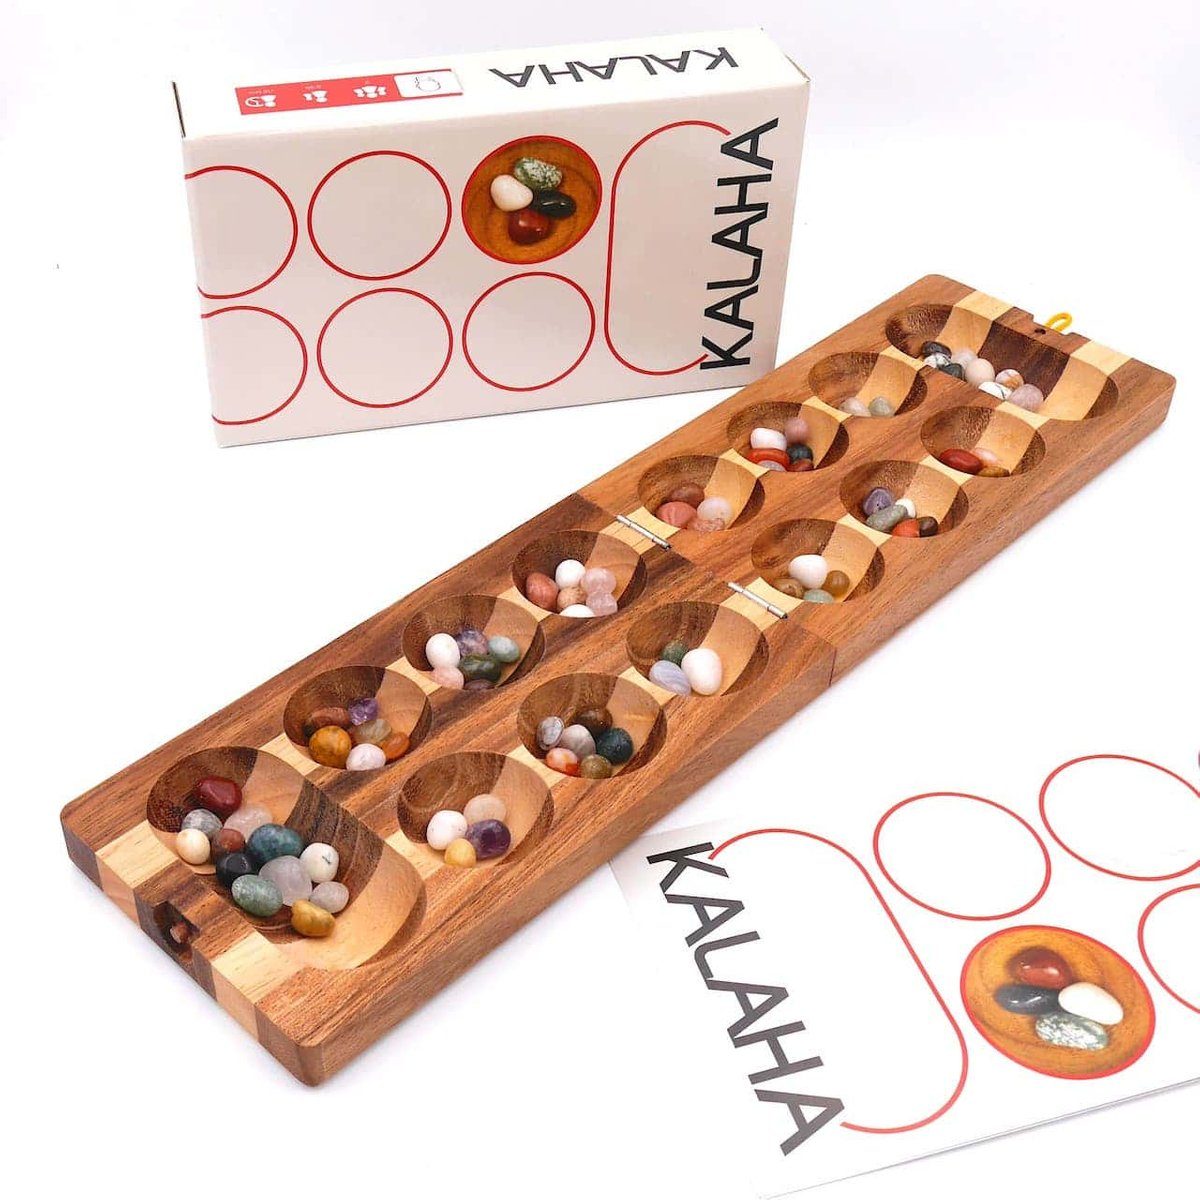 ROMBOL Denkspiele Spiel, Brettspiel Kalaha - hochwertiges Steinchenspiel inkl. Halbedelsteinen, Holzspiel zweifarbig, Halbedelsteine